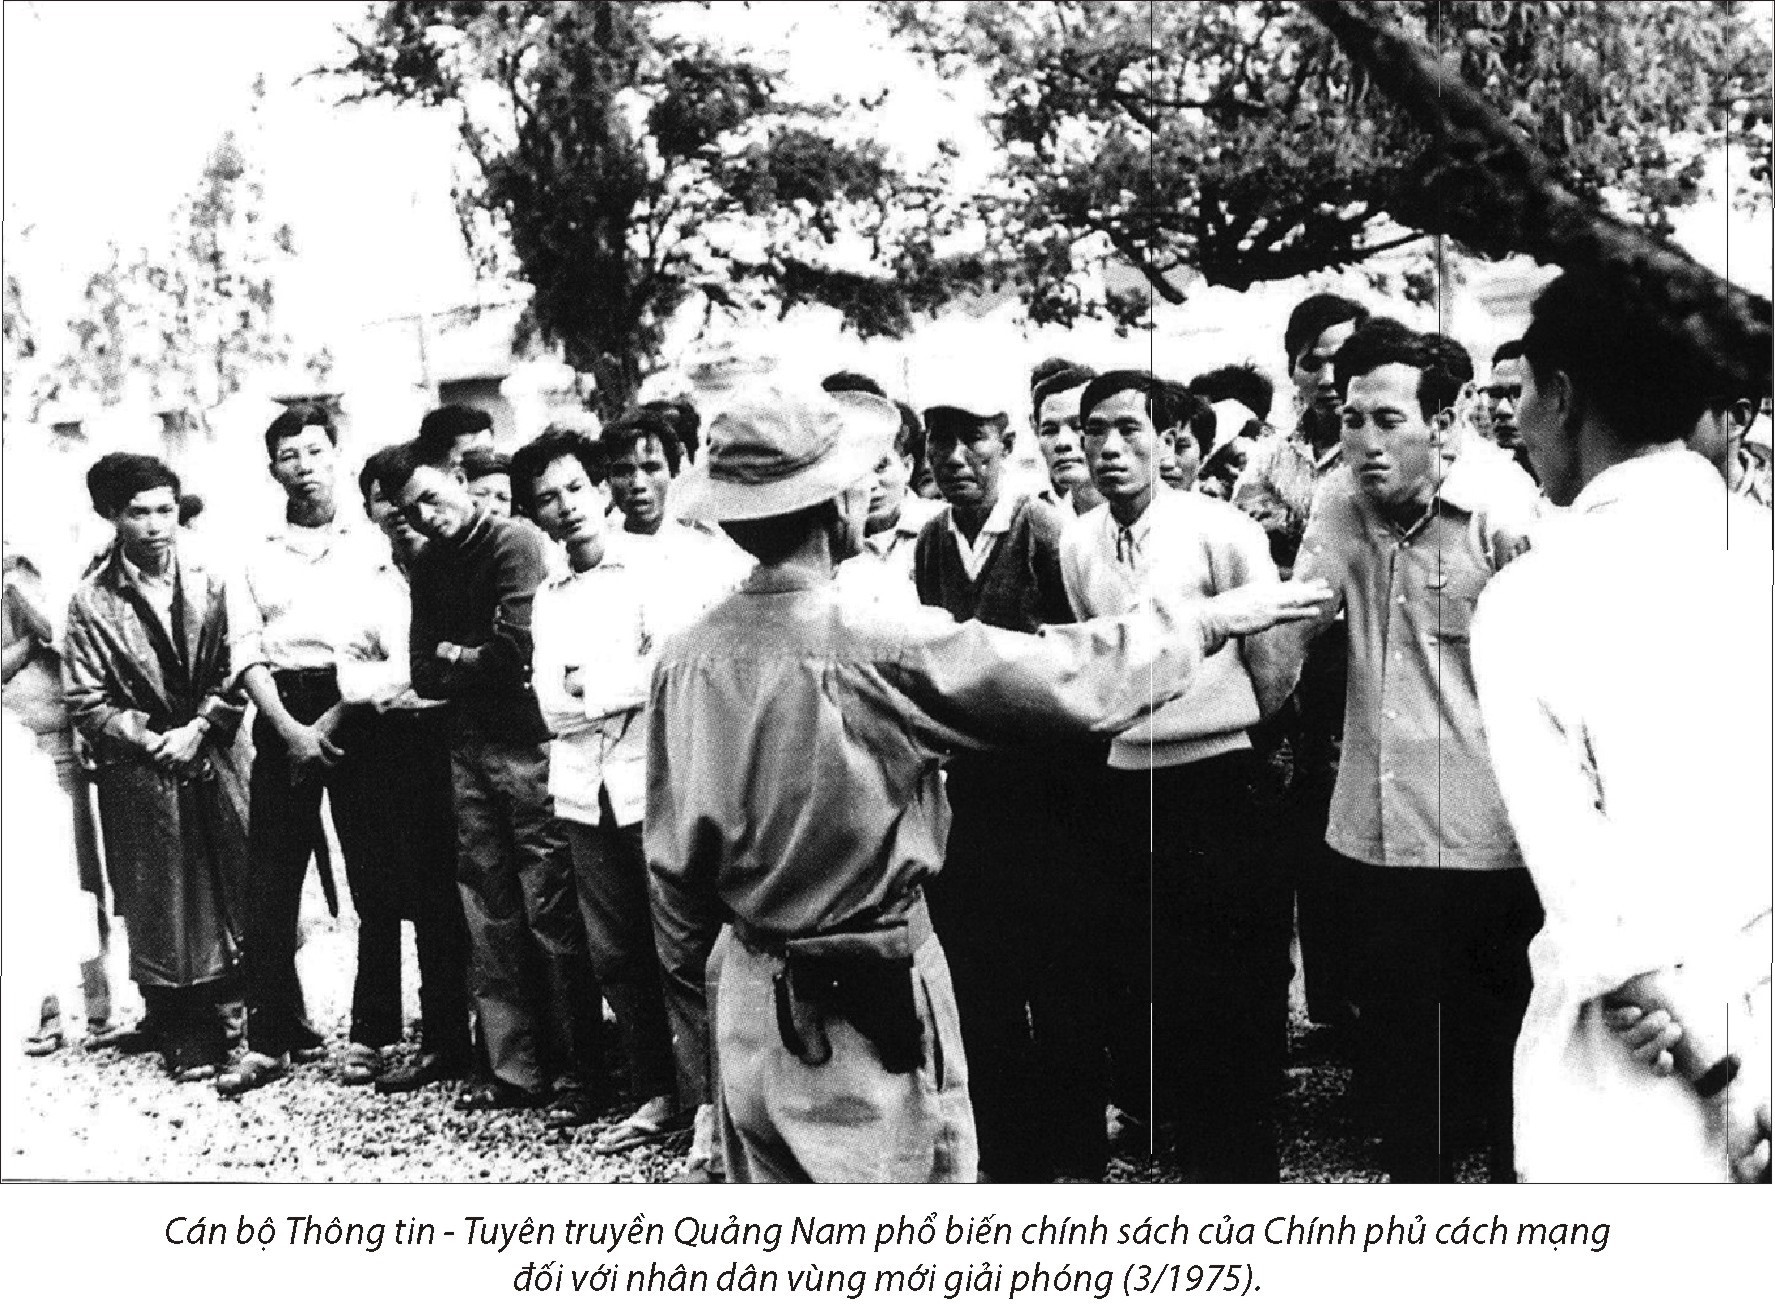 Cán bộ thông tin - tuyên truyền Quảng Nam phổ biến chính sách của chính phủ sau ngày giải phóng. (Ảnh tư liệu)